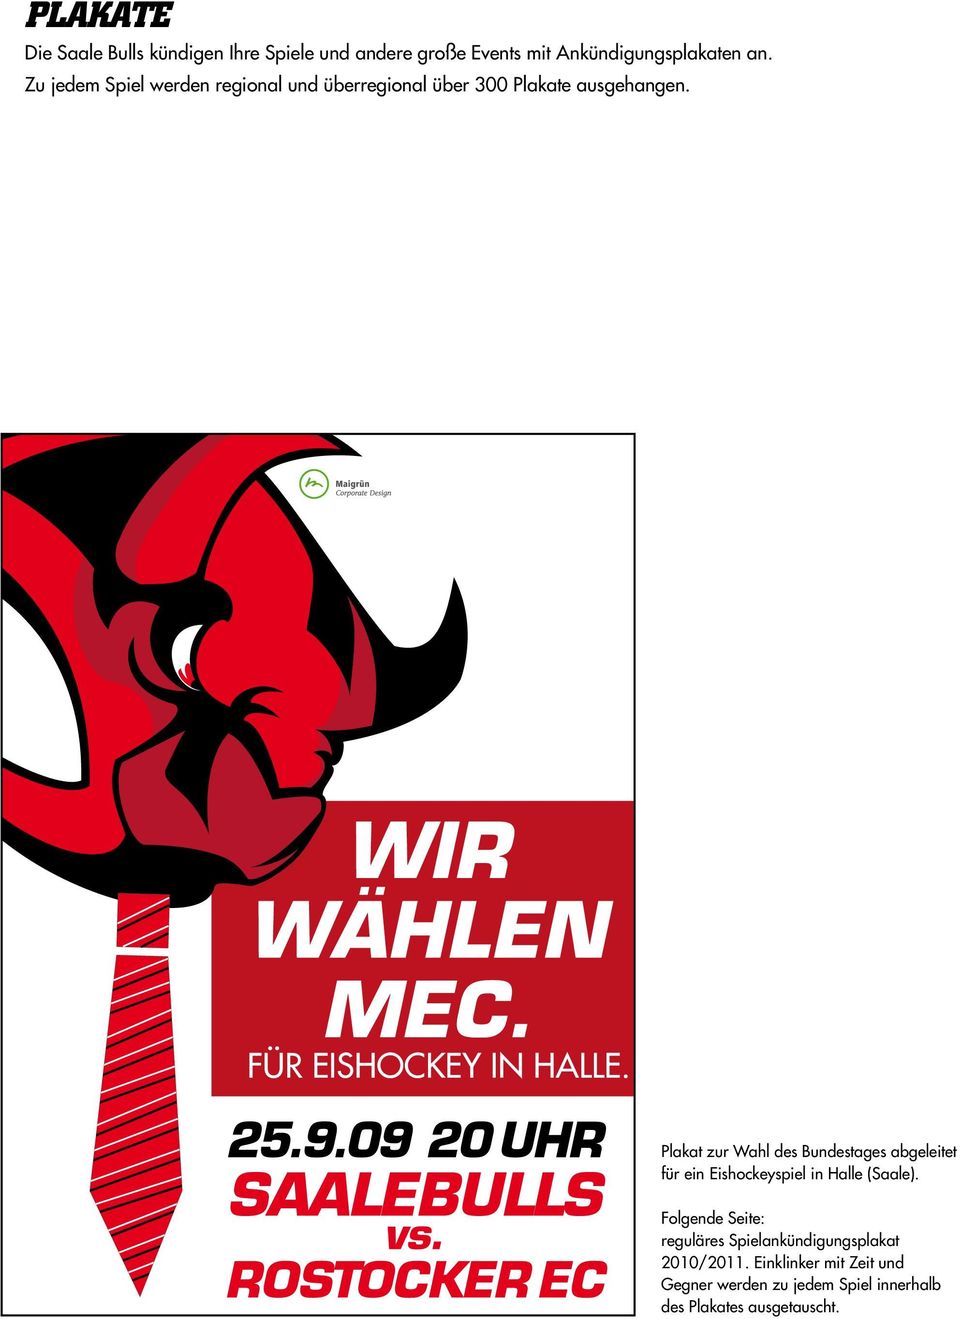 Plakat zur Wahl des Bundestages abgeleitet für ein Eishockeyspiel in Halle (Saale).